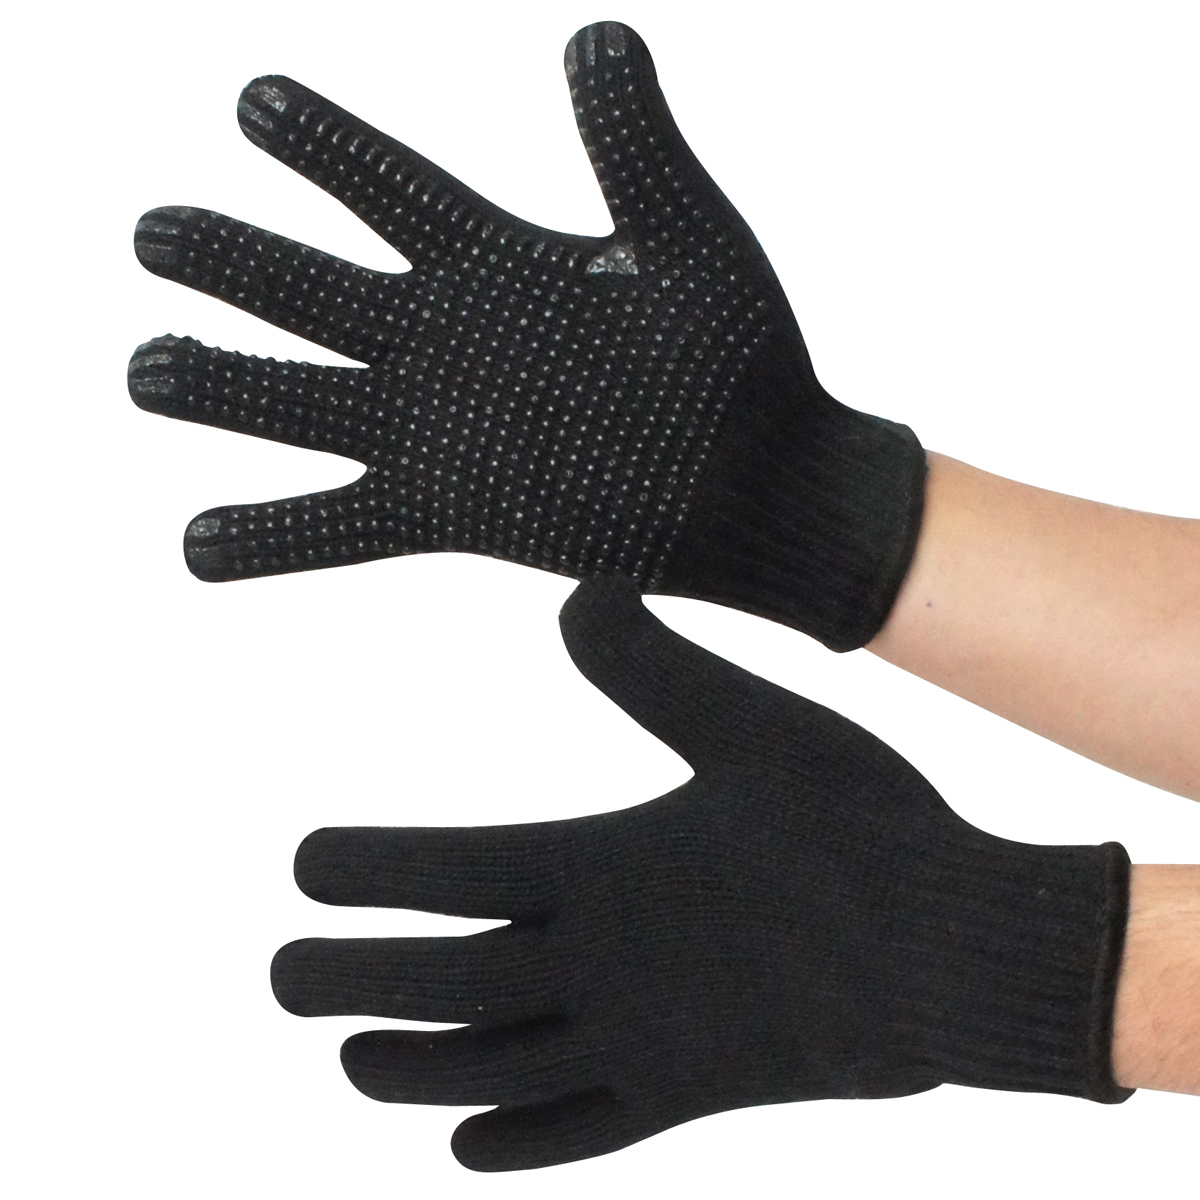 スベリ止め 極黒 10双組 AG395 ACE 作業用革手袋・作業用手袋のエース